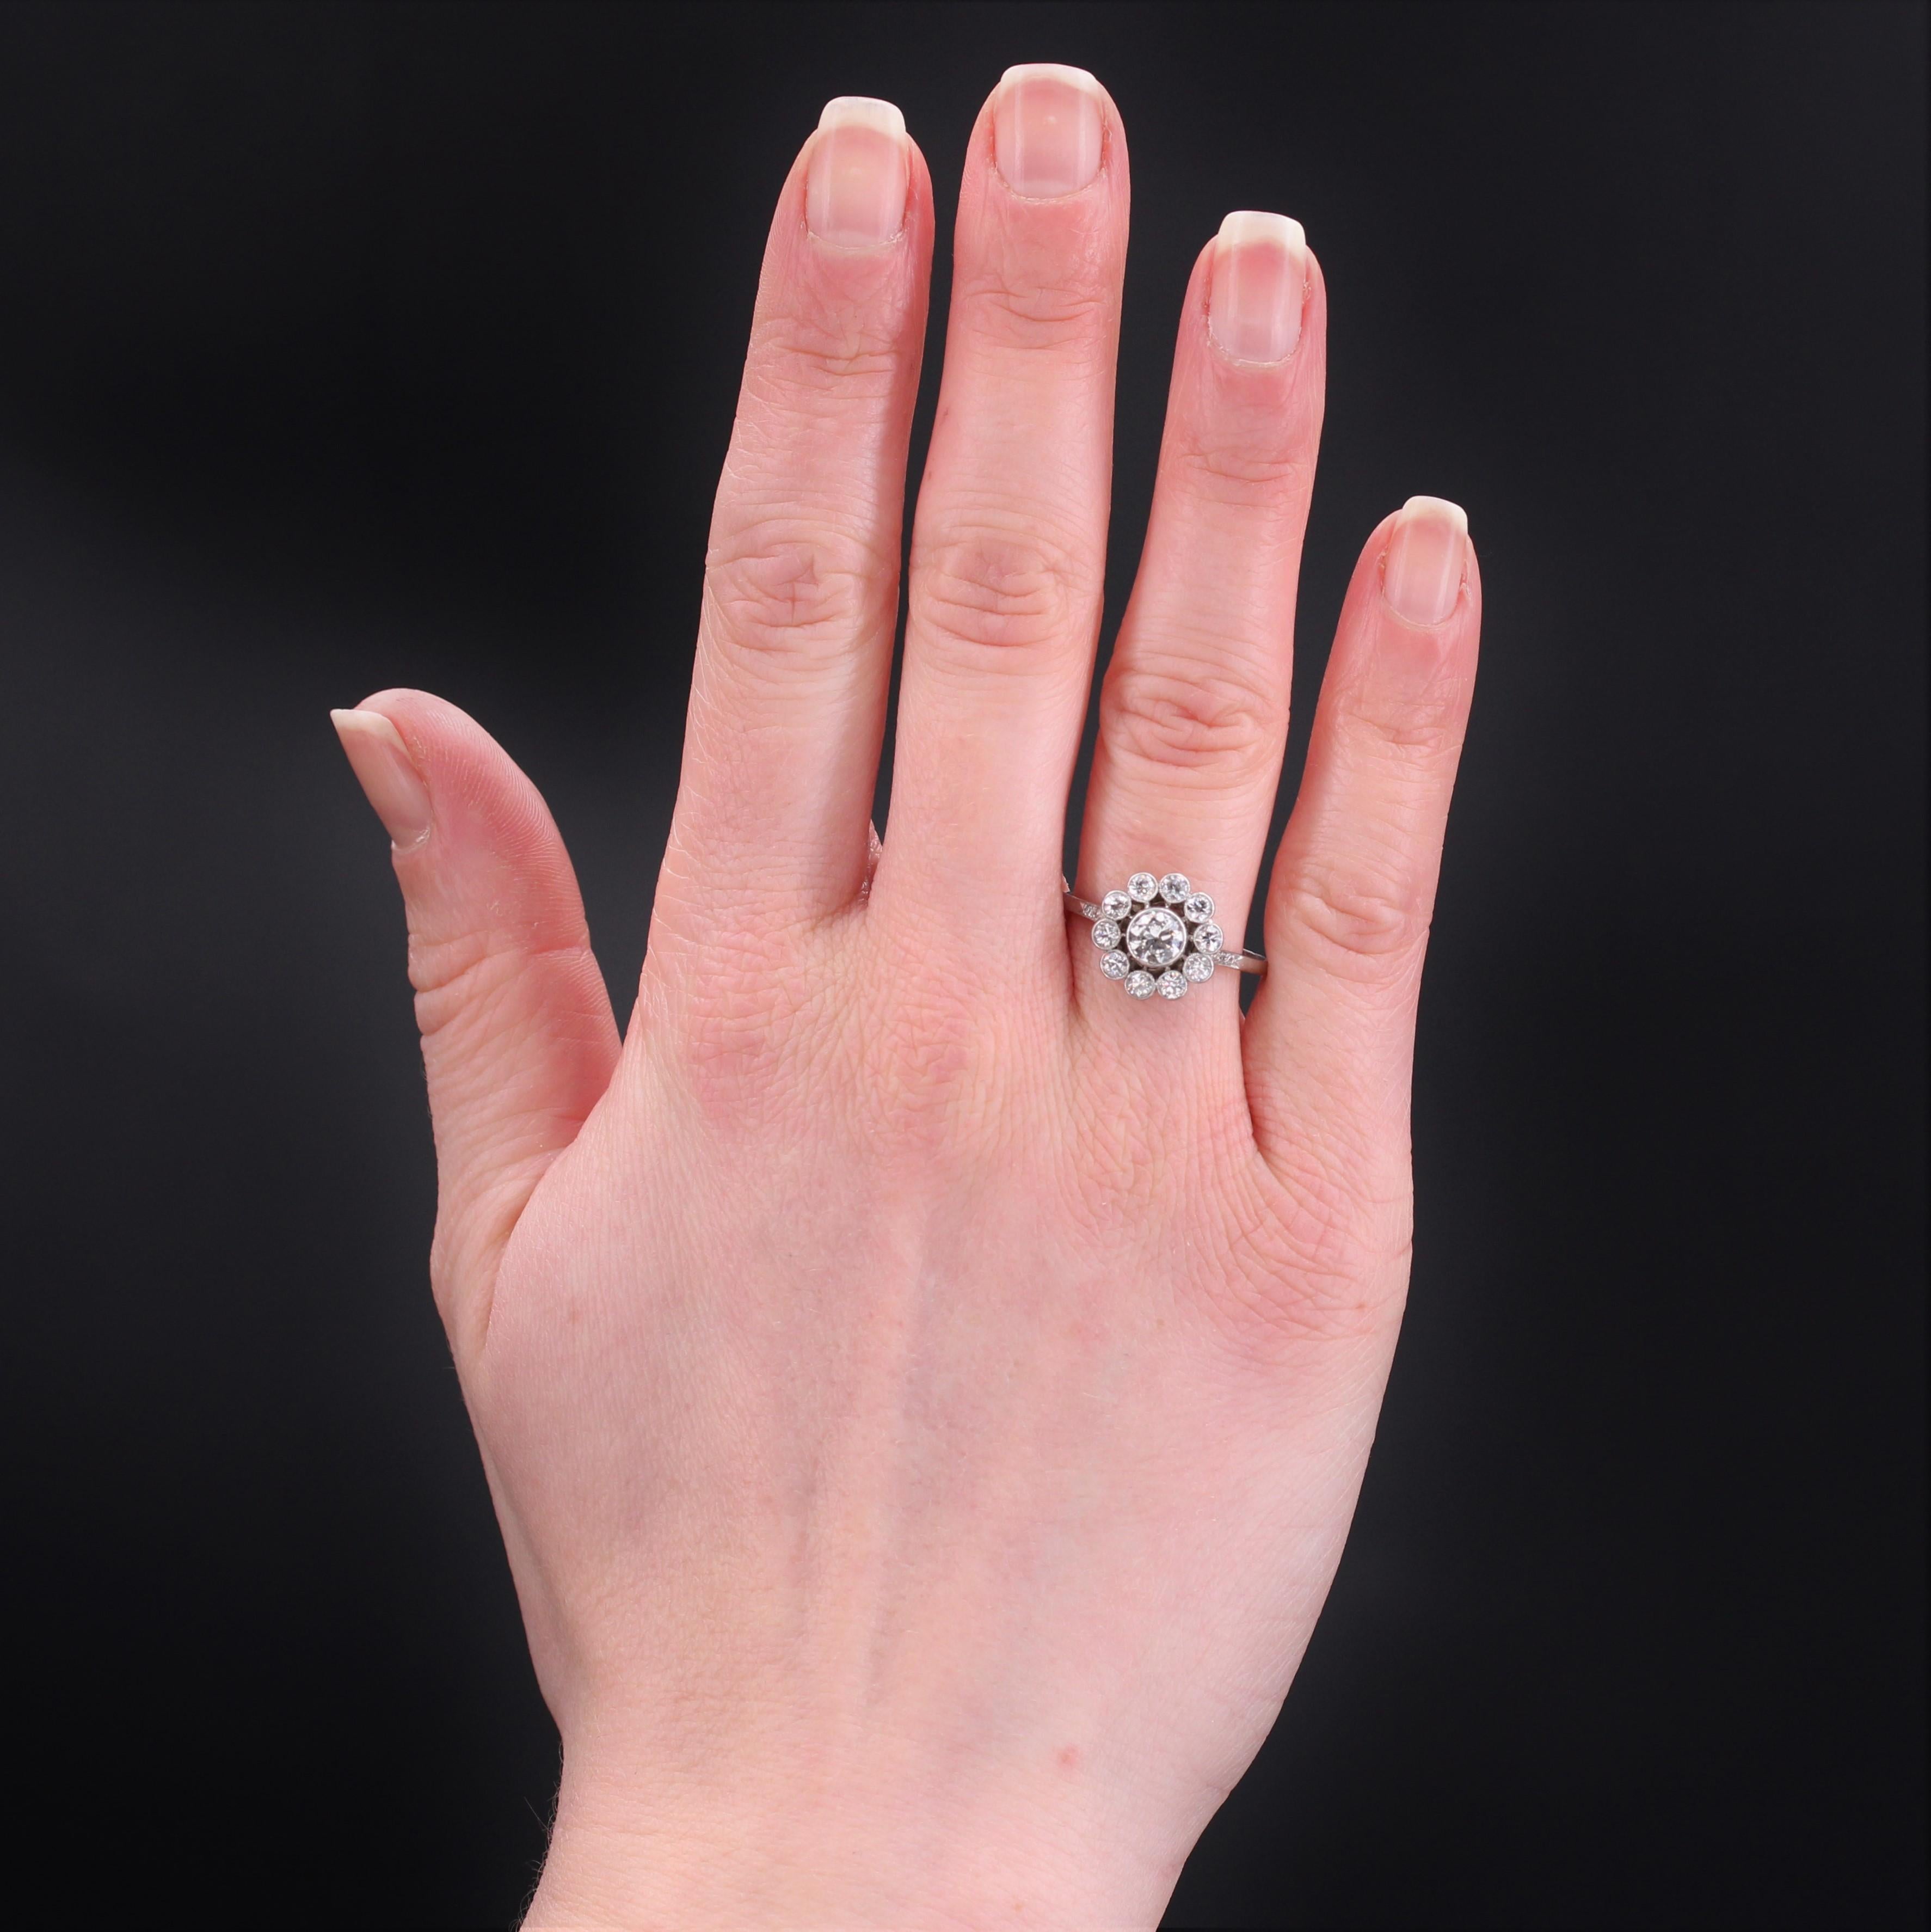 Ring aus Platin, Hundekopfpunze.
Dieser schöne Blumenring ist mit antiken Diamanten im Brillantschliff in einer geschlossenen Fassung besetzt, wobei der mittlere Diamant größer ist. Das Körbchen ist wunderschön durchbrochen und der Anfang des Rings